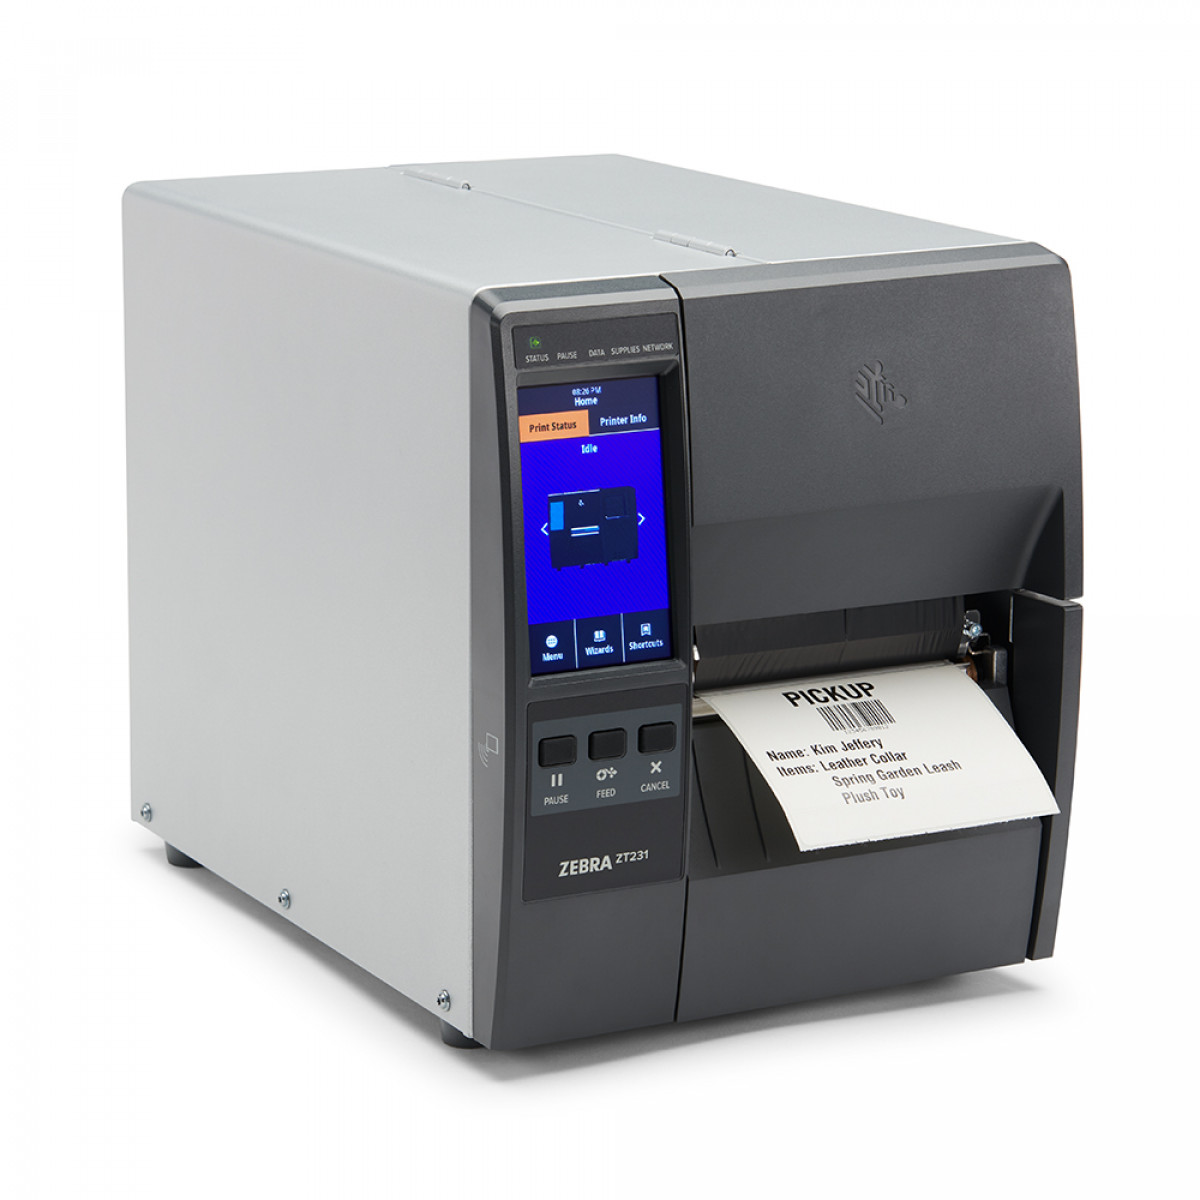 Zebra ZT231 Direct & Thermal Transfer printer